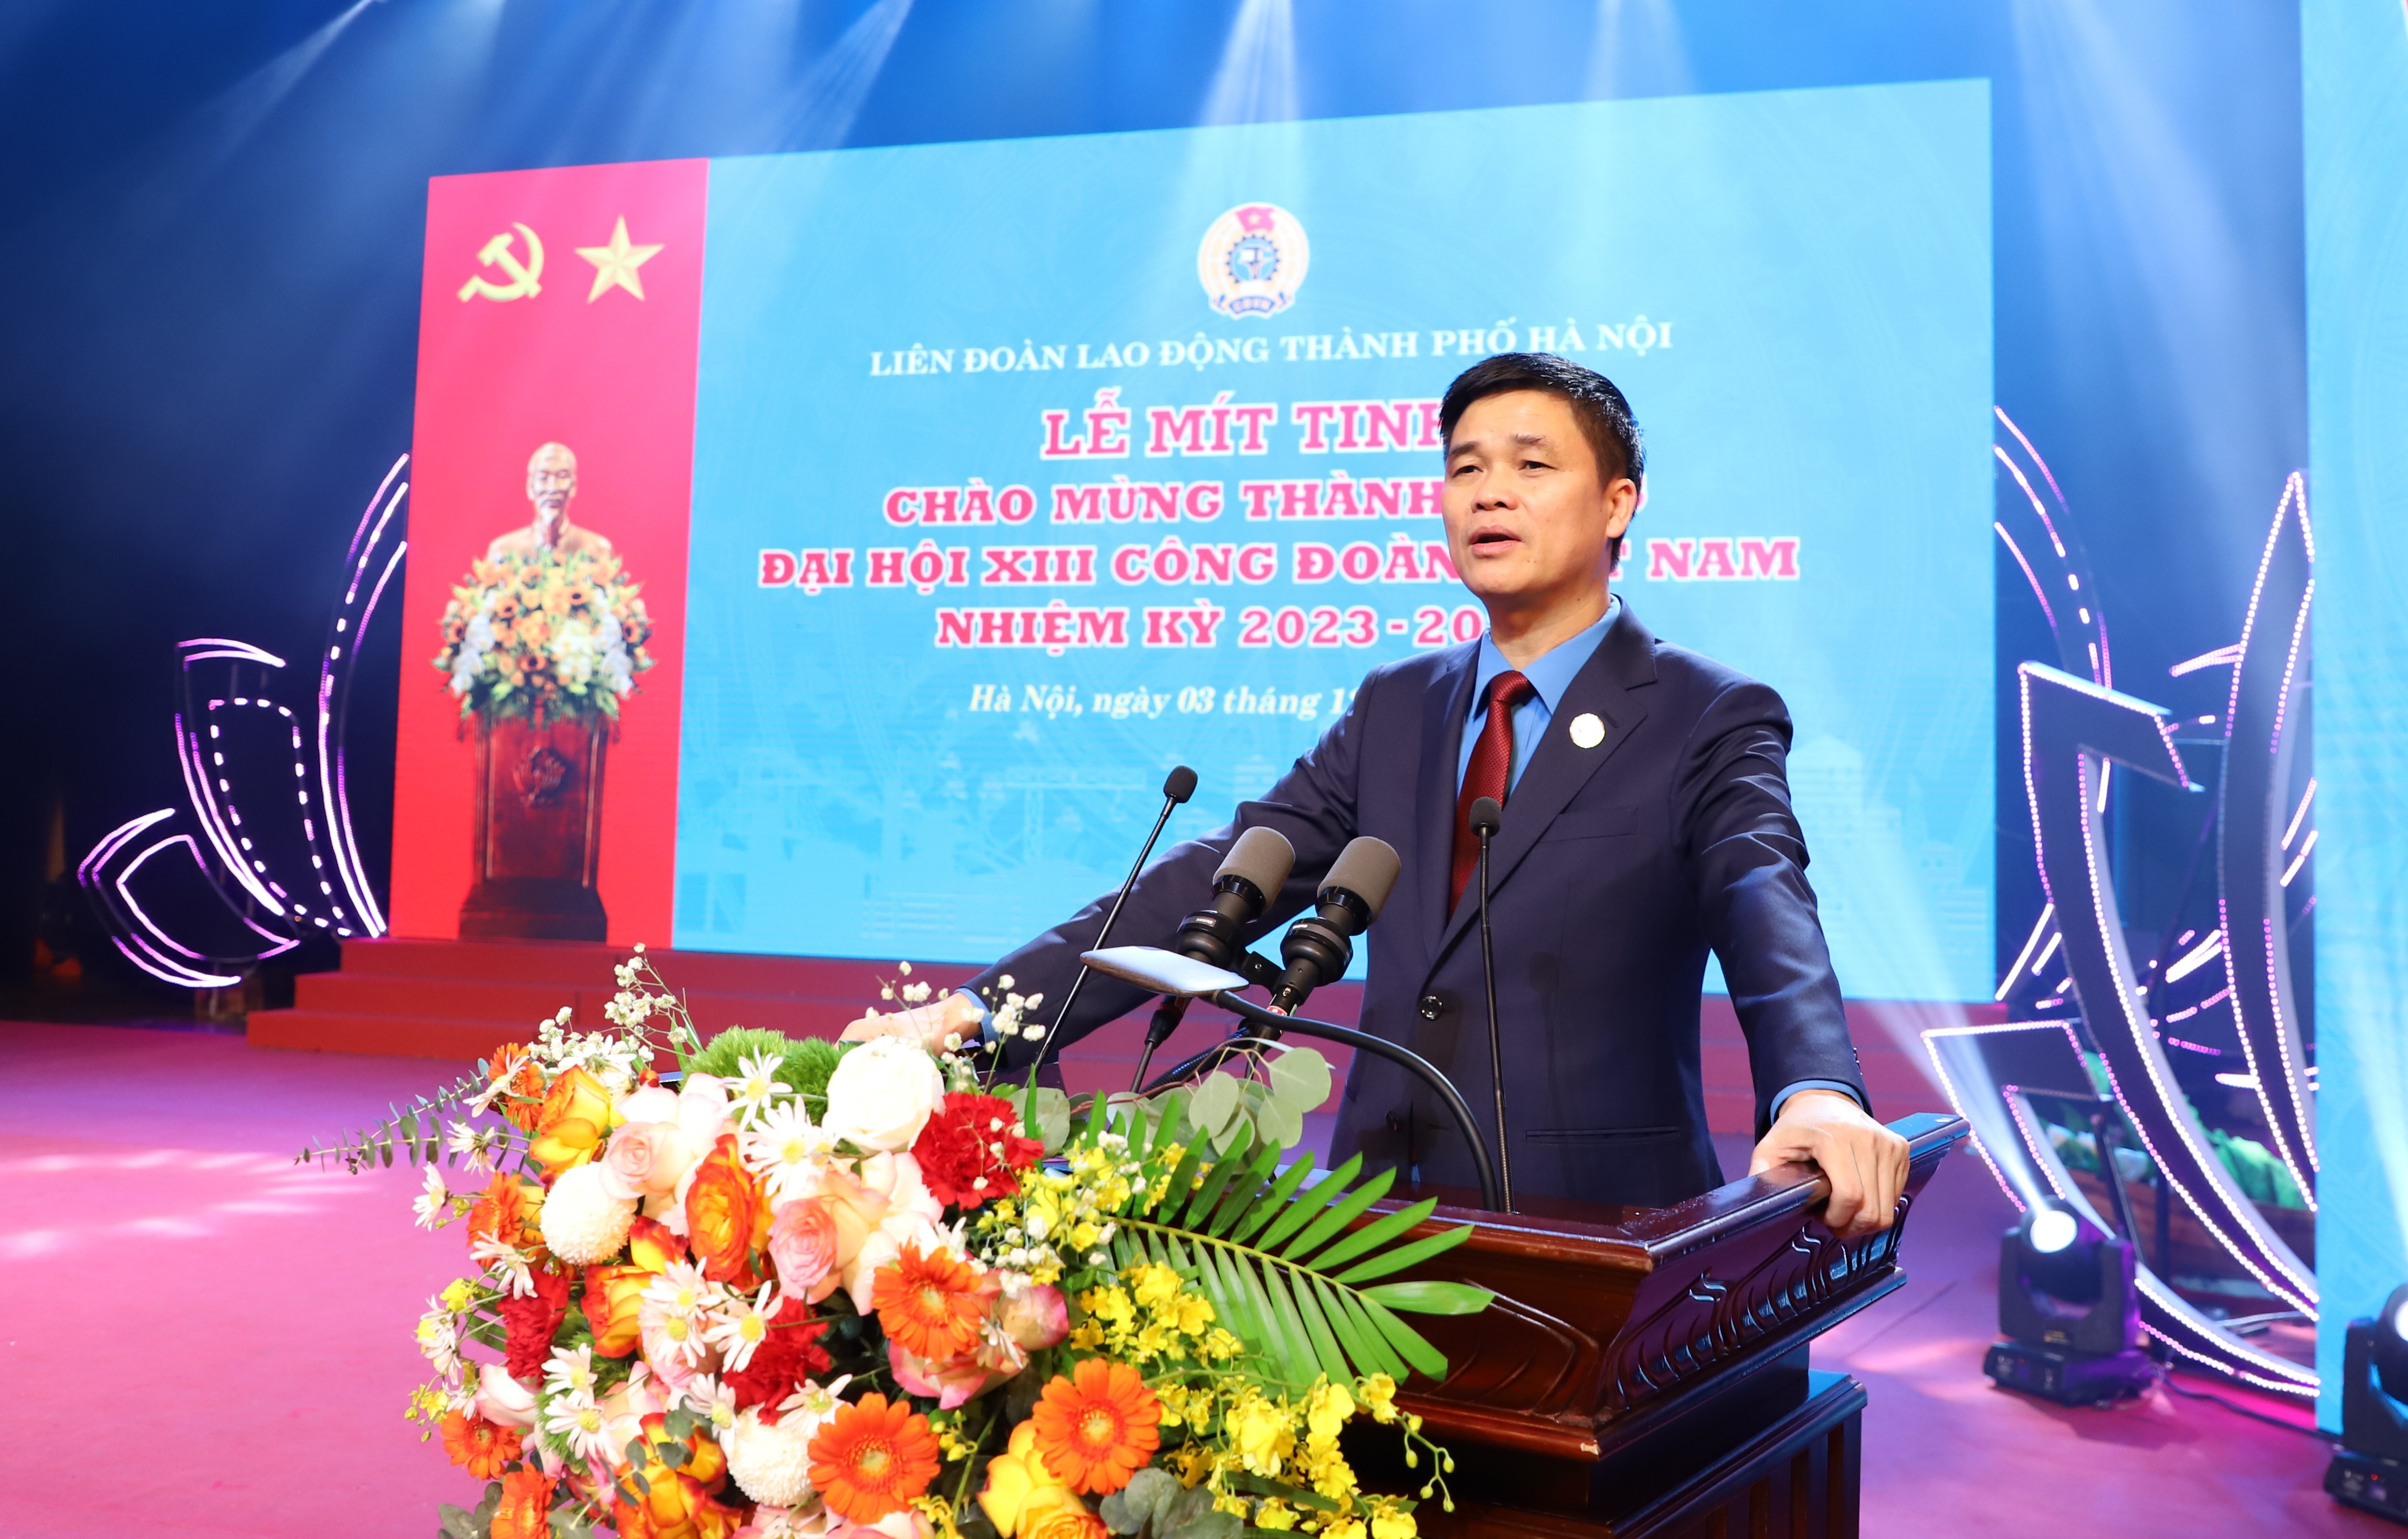 LĐLĐ thành phố Hà Nội mít tinh chào mừng thành công Đại hội XIII Công đoàn Việt Nam